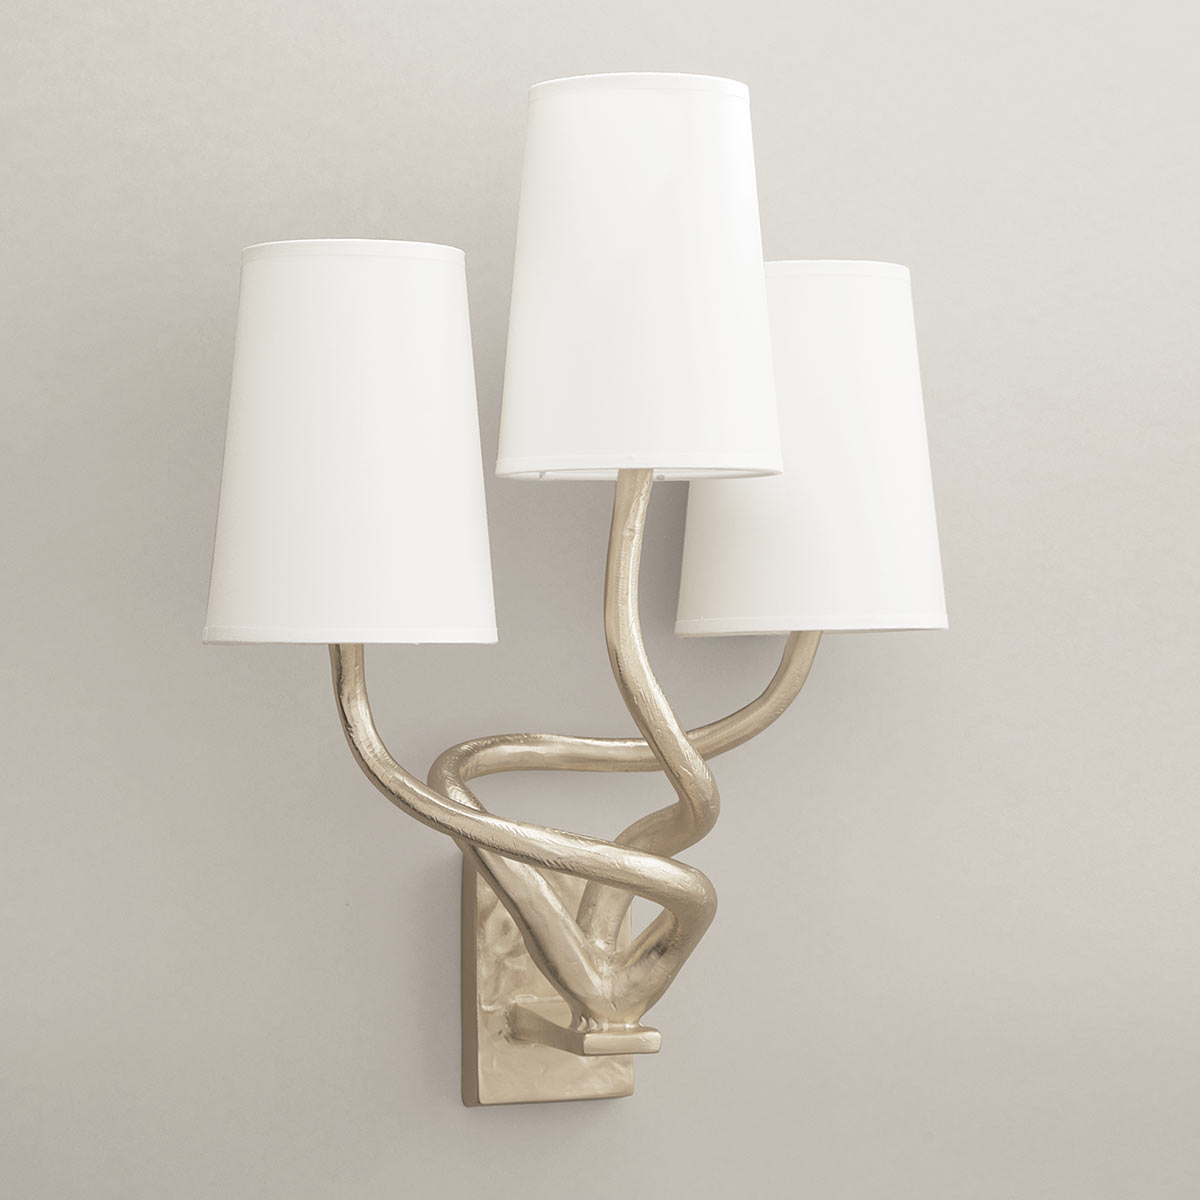 objet-insolite-triple-applique-bronze-nickel-Decoris-Interior_Design-ZurichL.jpg